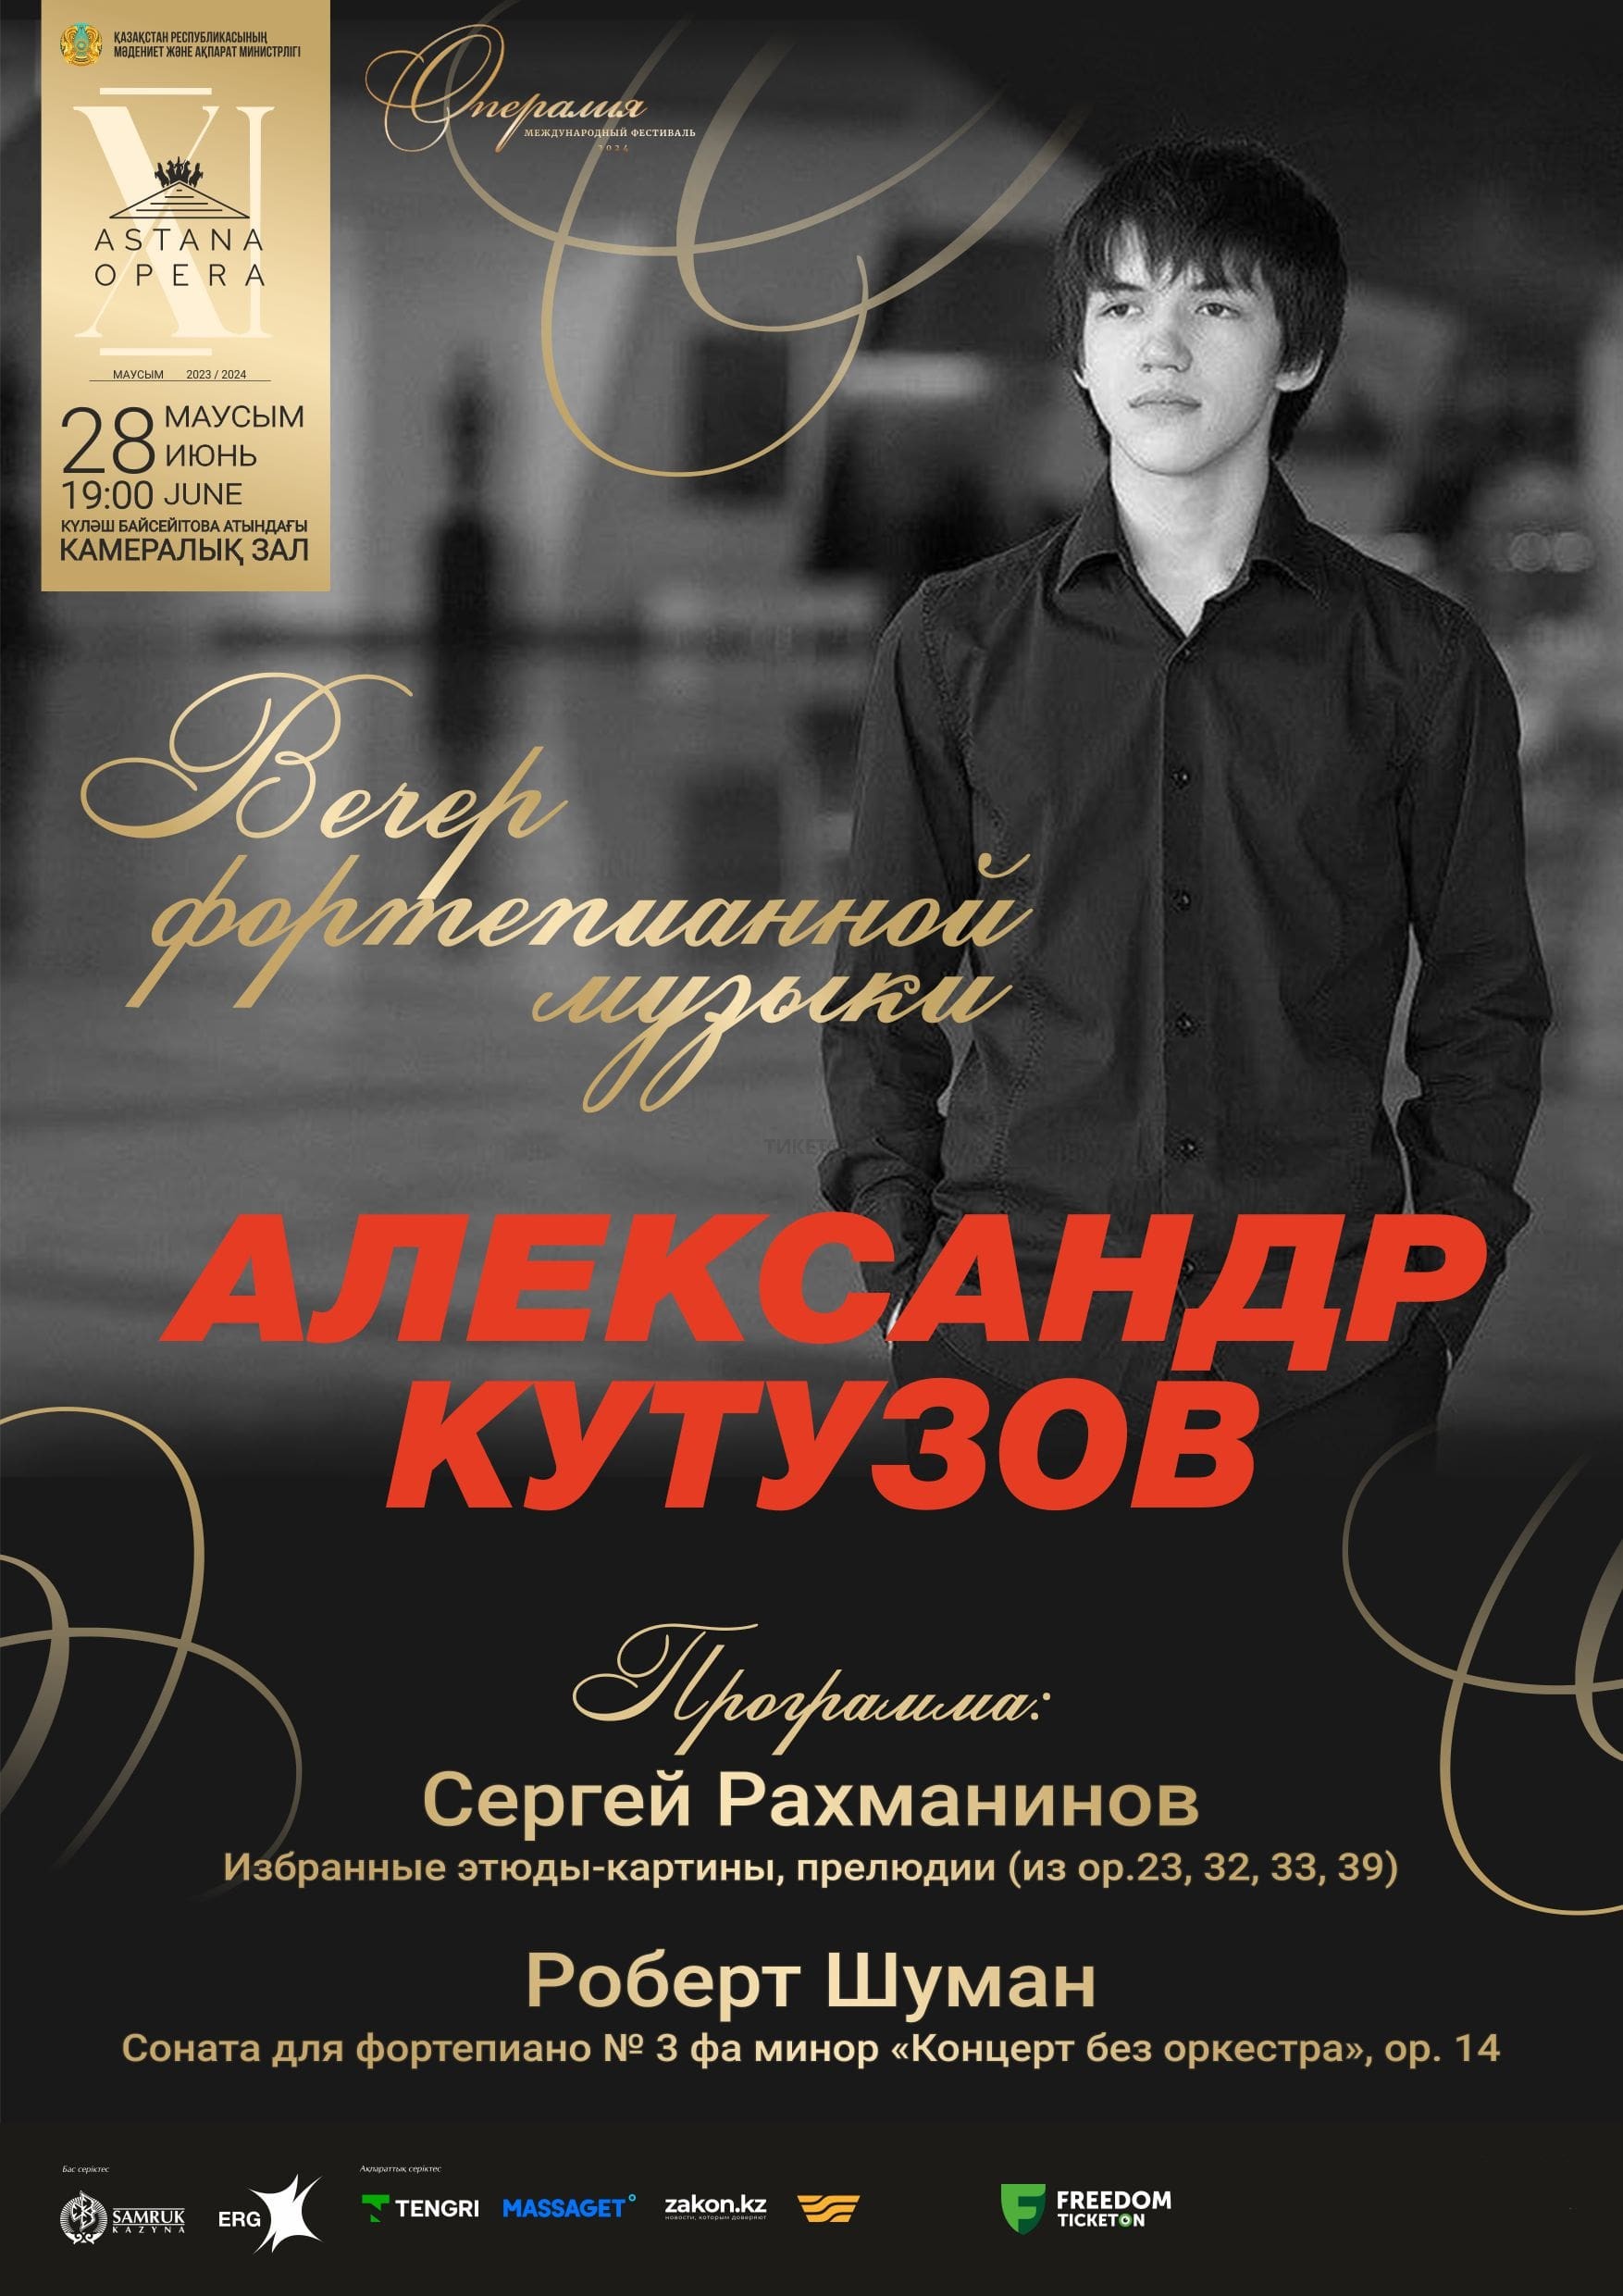 Вечер фортепианной музыки Александр Кутузов  (AstanaOpera)